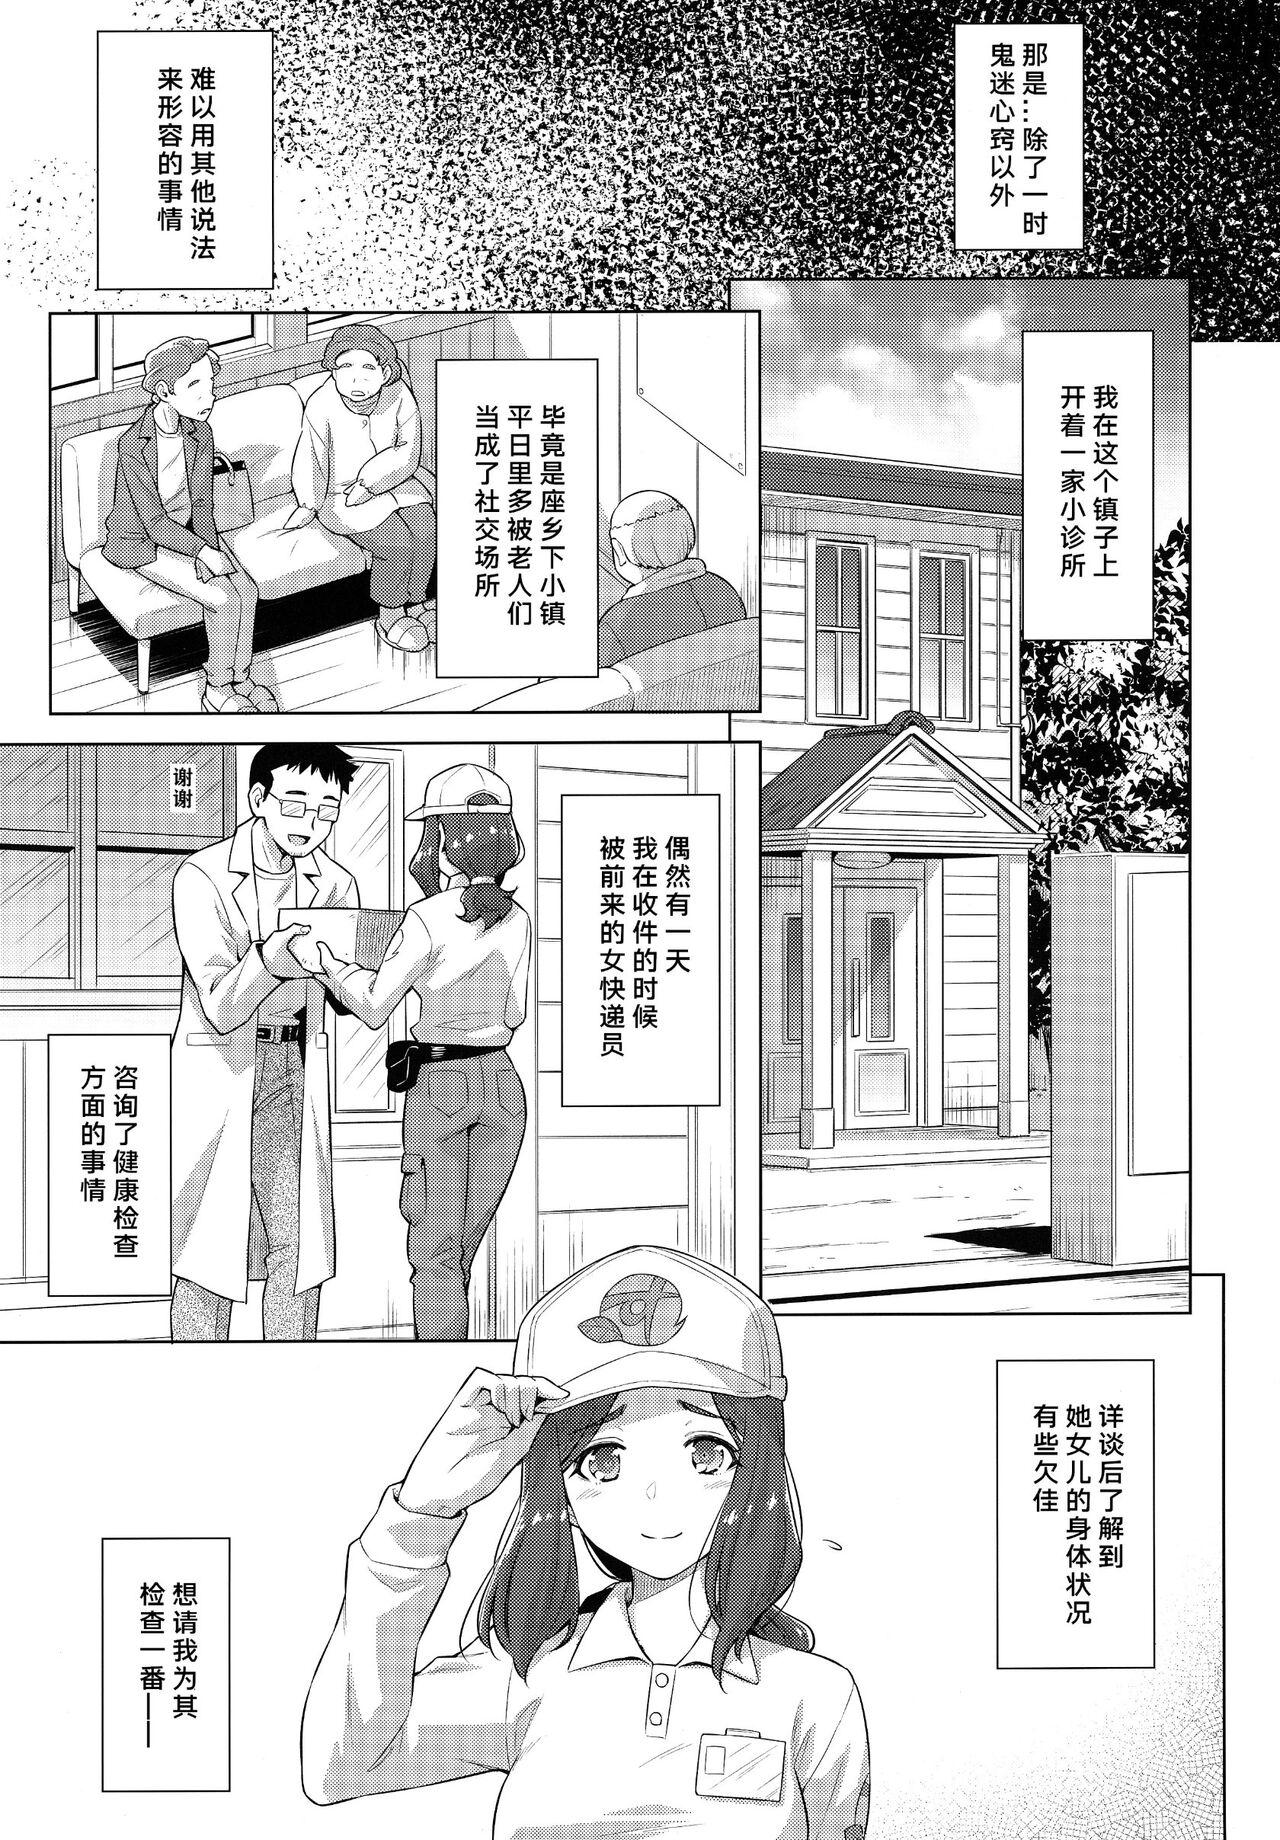 Strange Boku no Shinryoujo e Youkoso. - Healin good precure Tranny Sex - Page 4